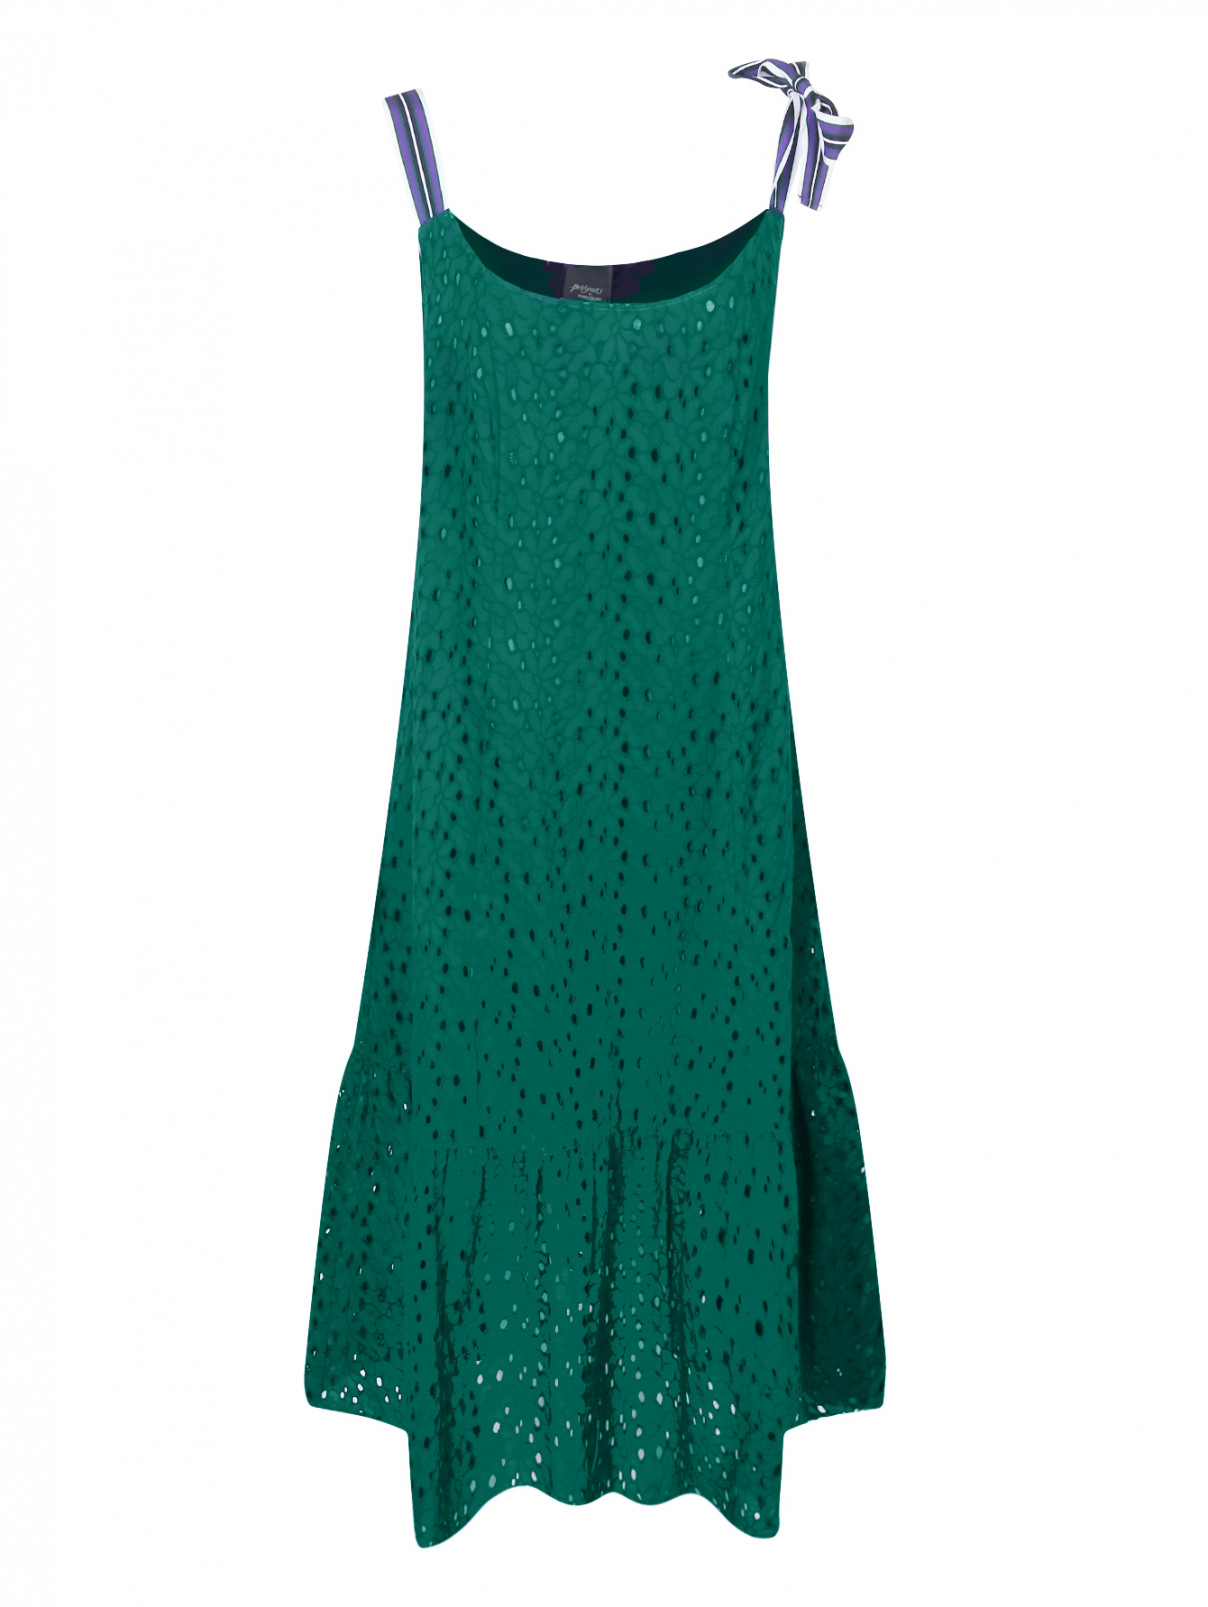 Платье из хлопка с ажурным узором Persona by Marina Rinaldi  –  Общий вид  – Цвет:  Зеленый